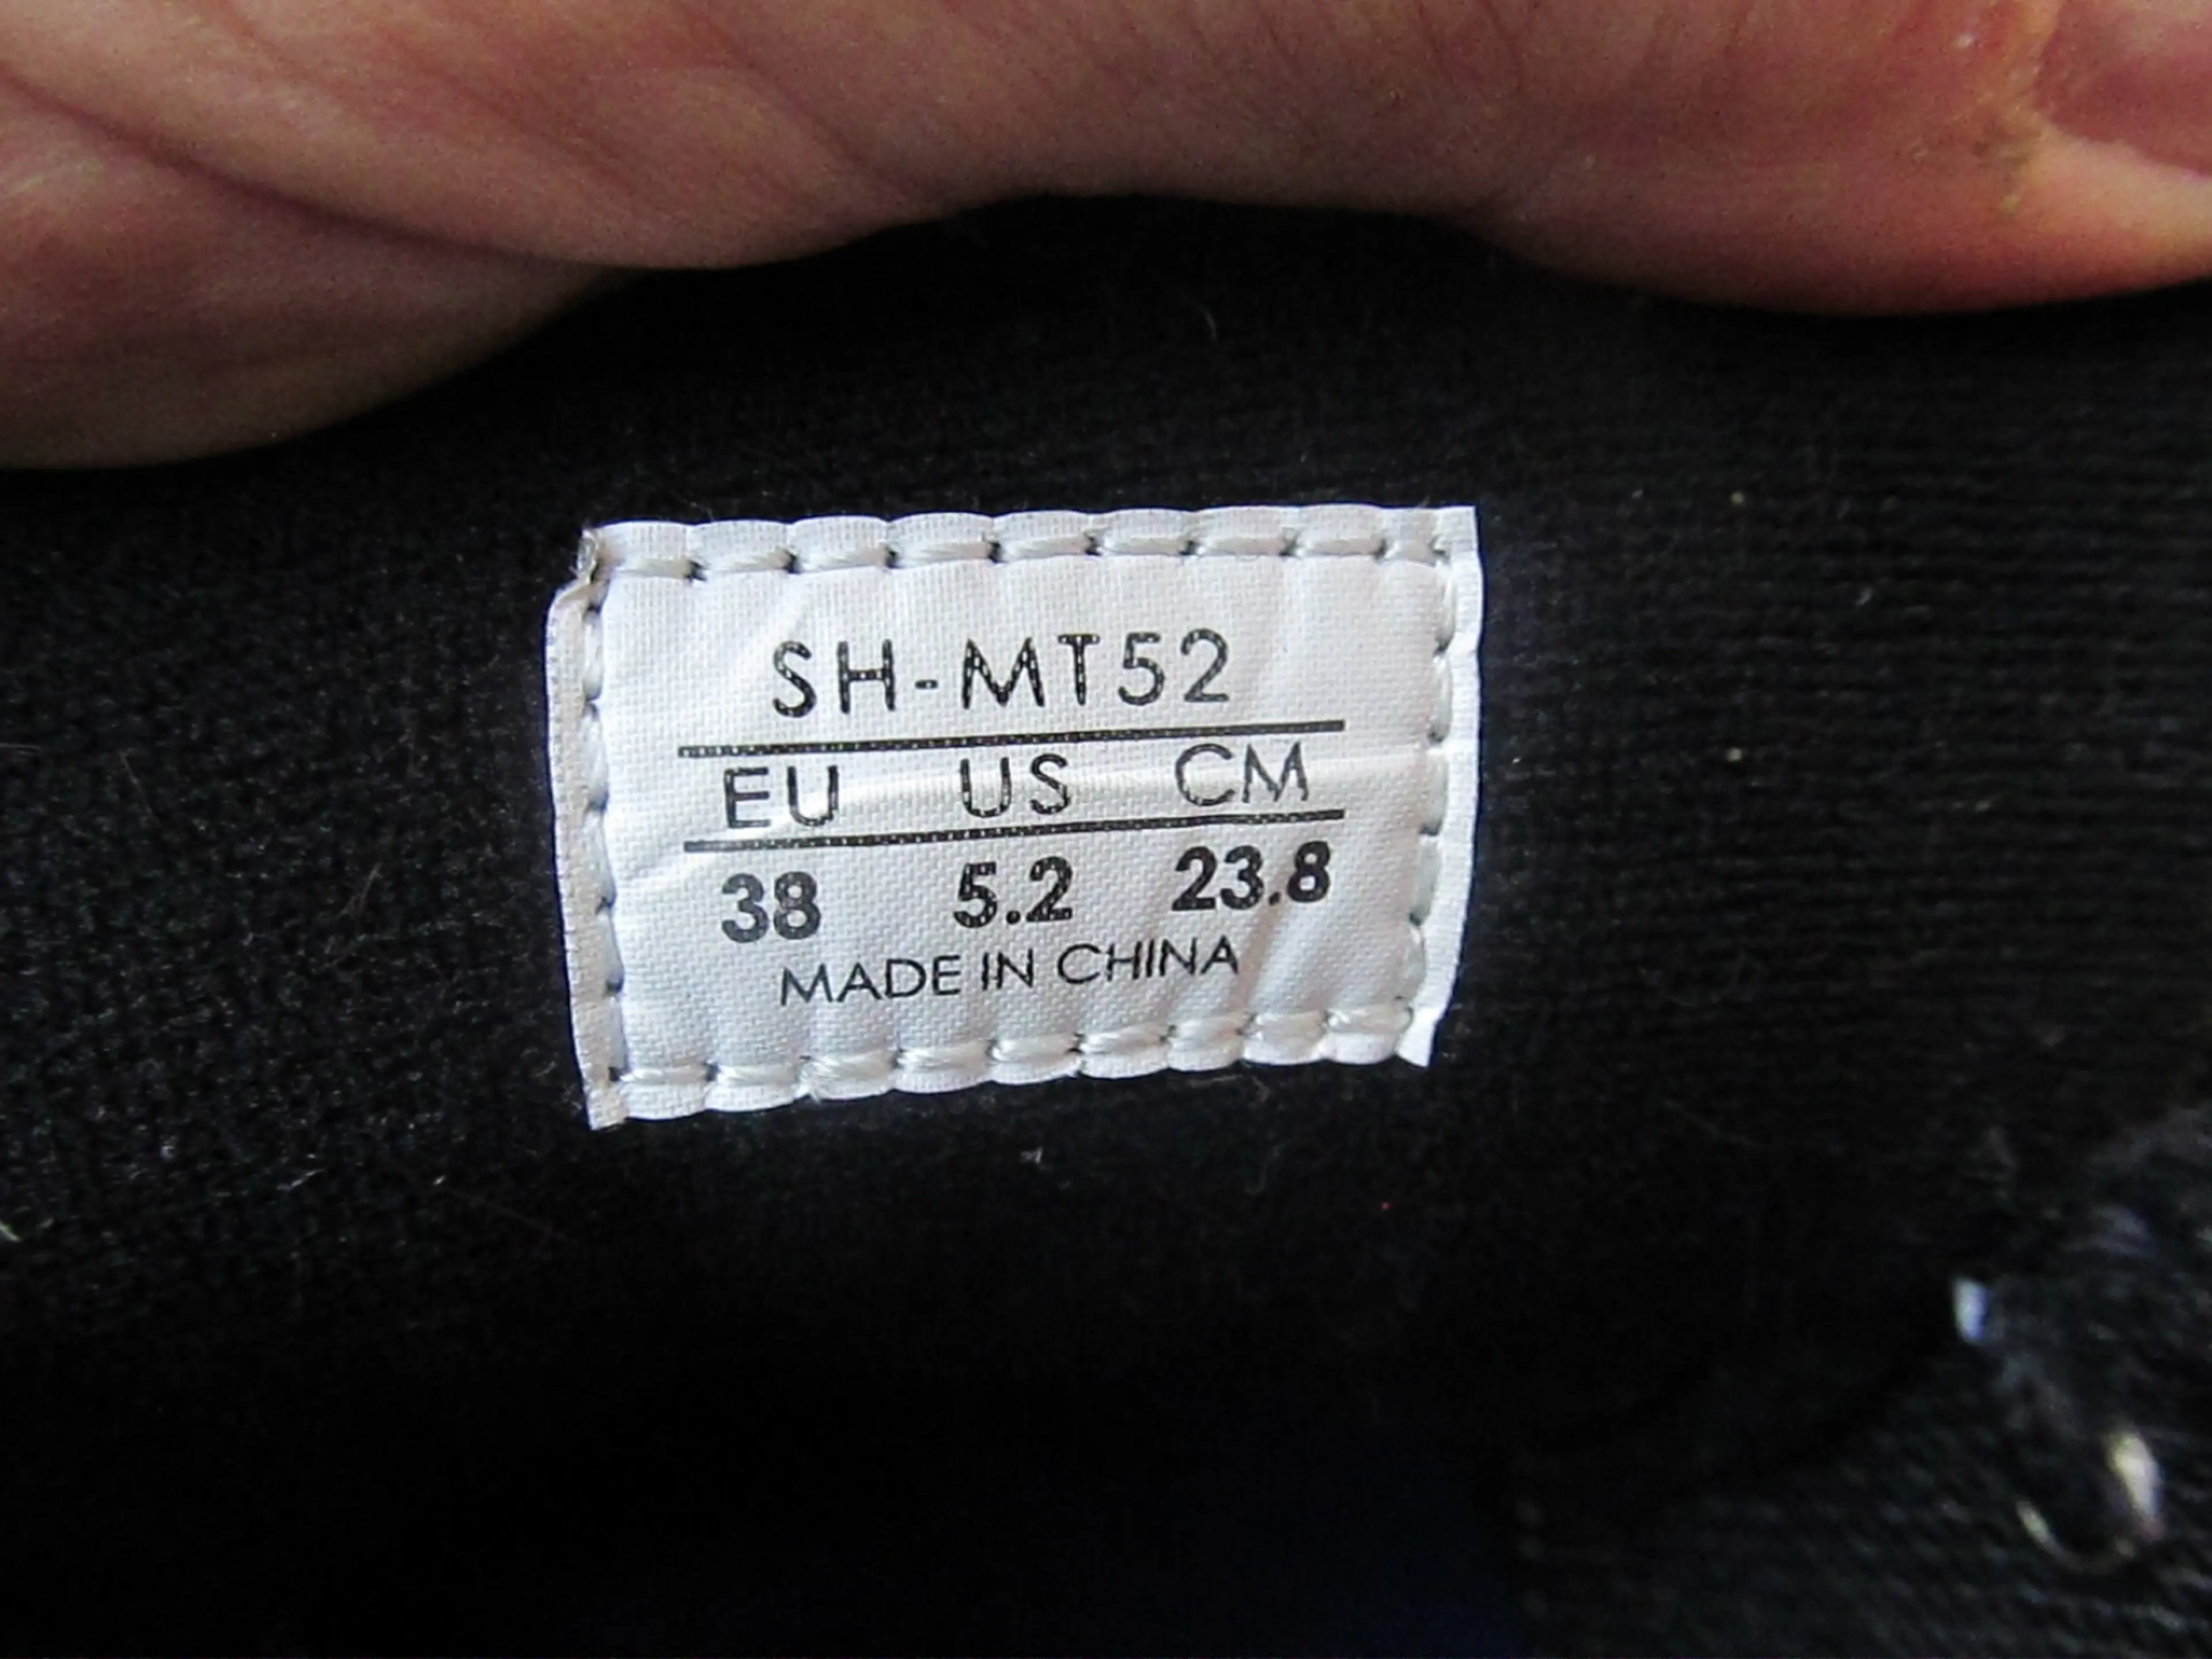 3. Pantofi Shimano SH-MT52, nr 38, 23.8cm